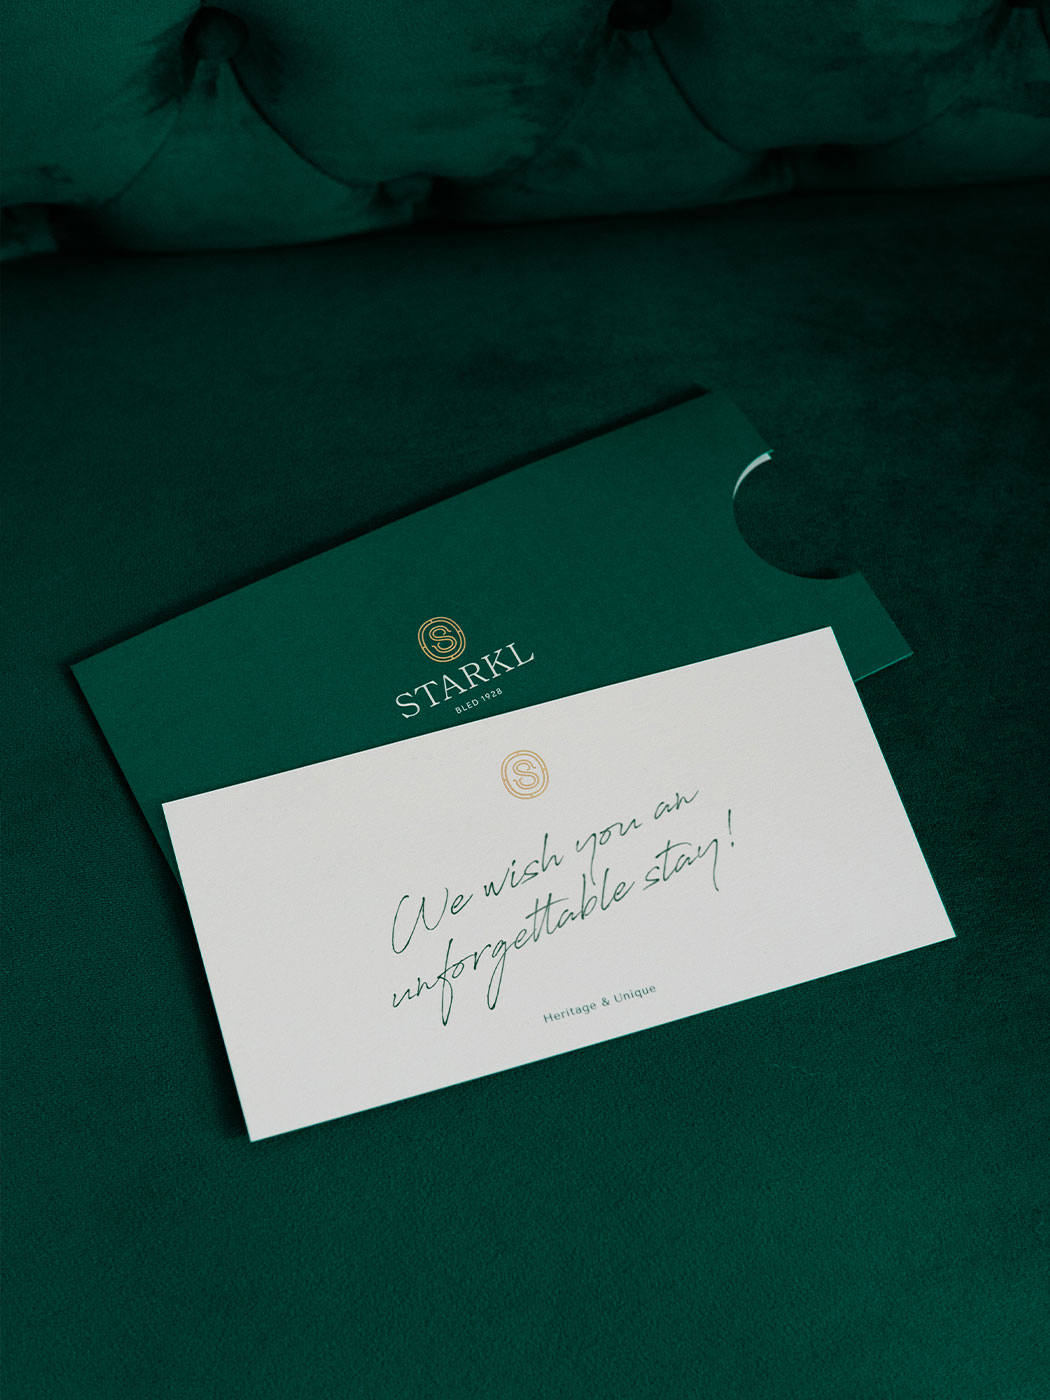 Studio-Hrastar-Hotel-Starkl-Welcome-Card